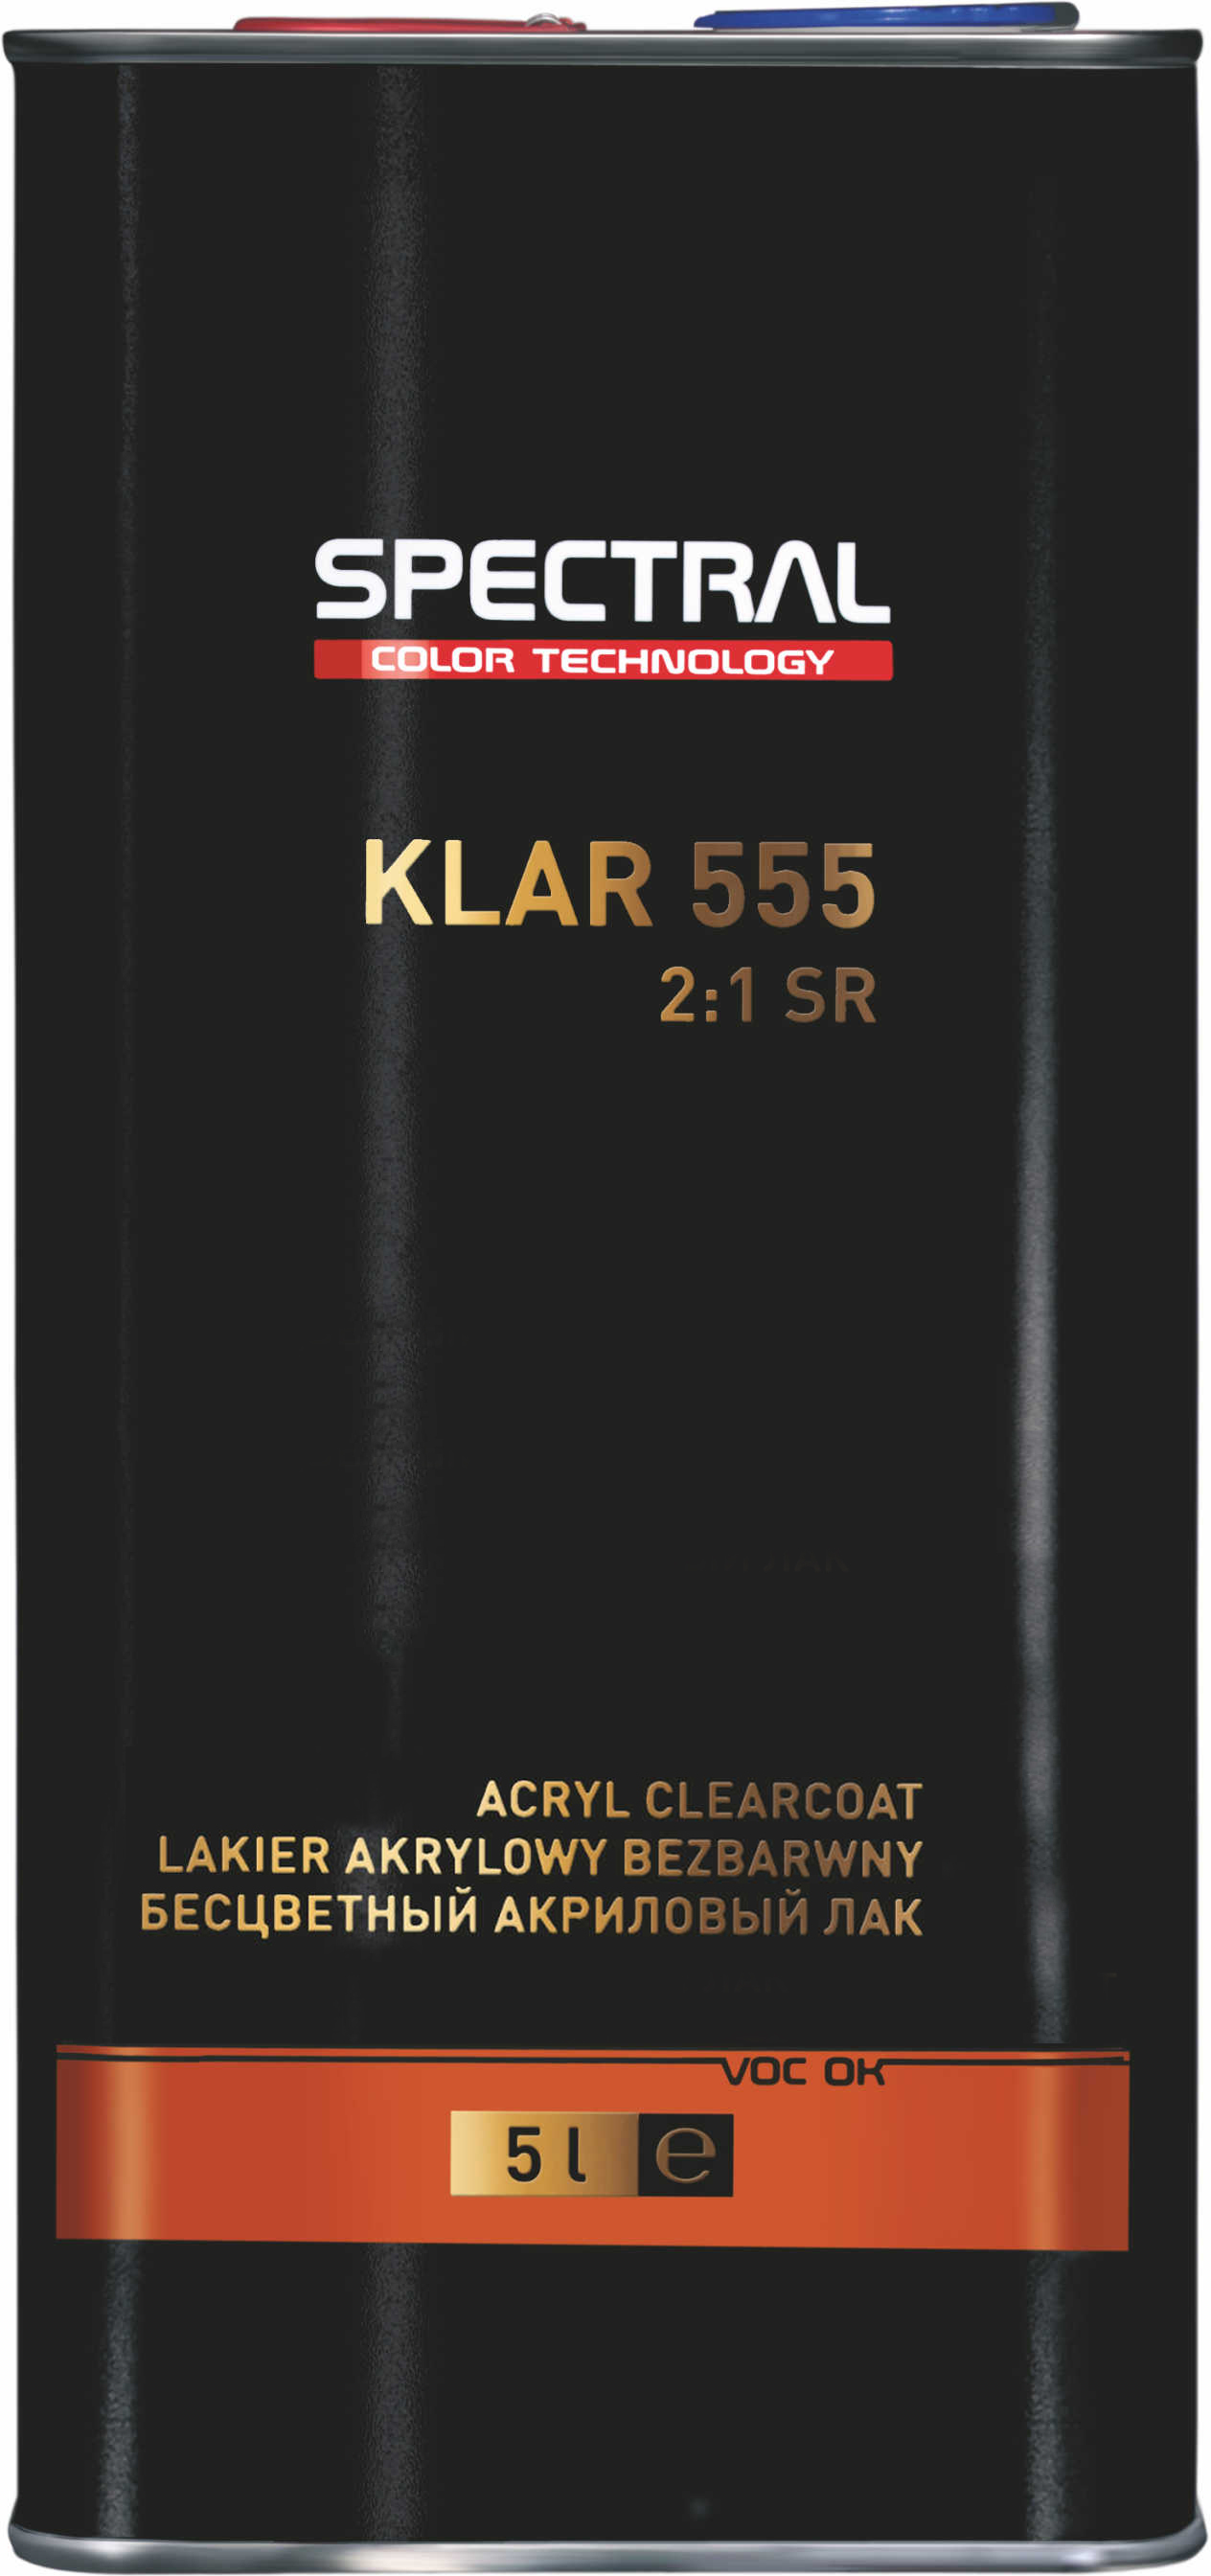 KLAR 555 - Vernis acrylique incolore à deux composants avec une résistance aux rayures élevée - Scratch Resistant (SR